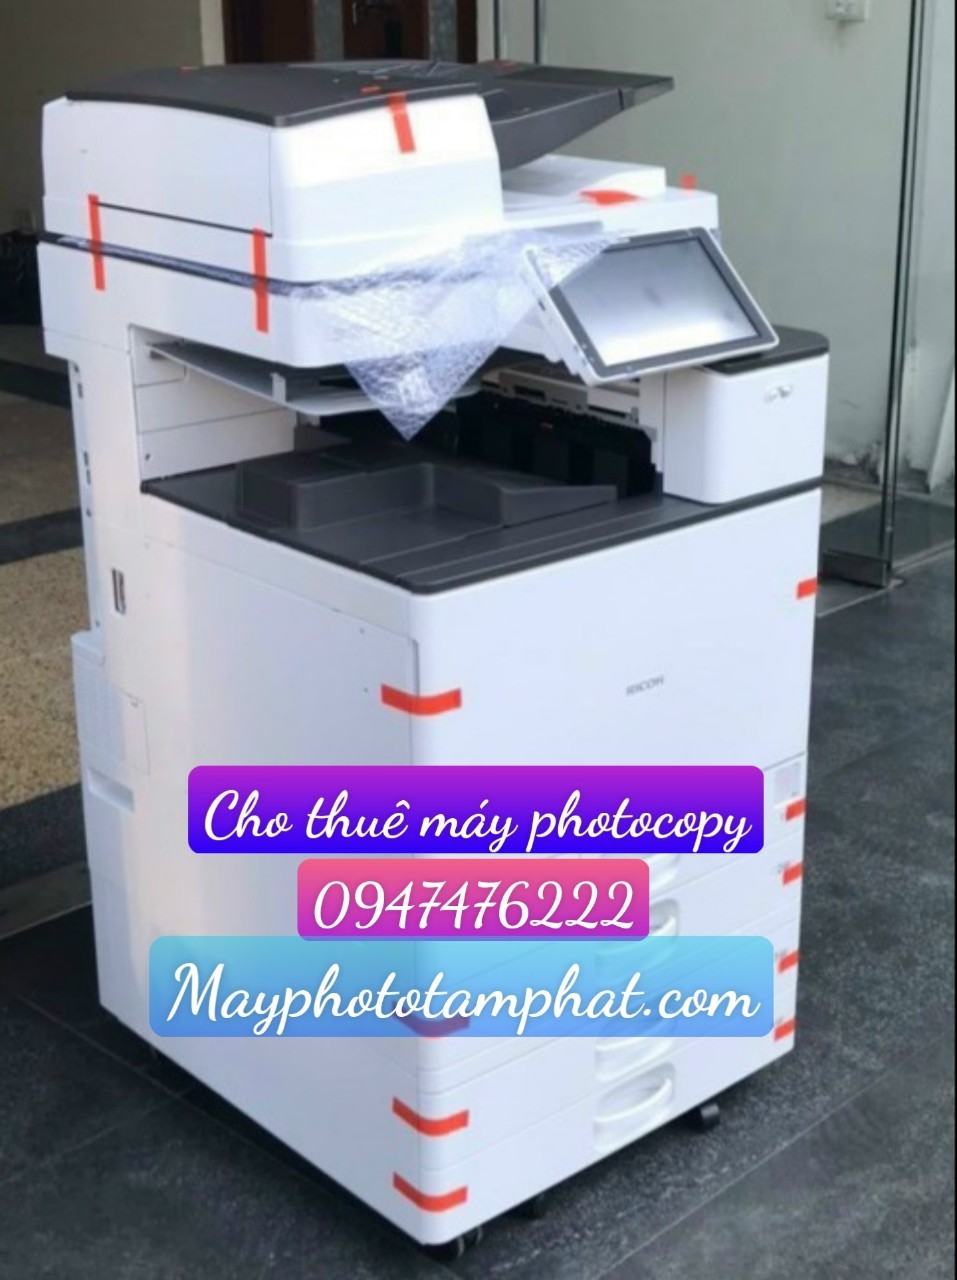 Cho thuê máy photocopy màu tại Nam Từ Liêm - Hà Nội